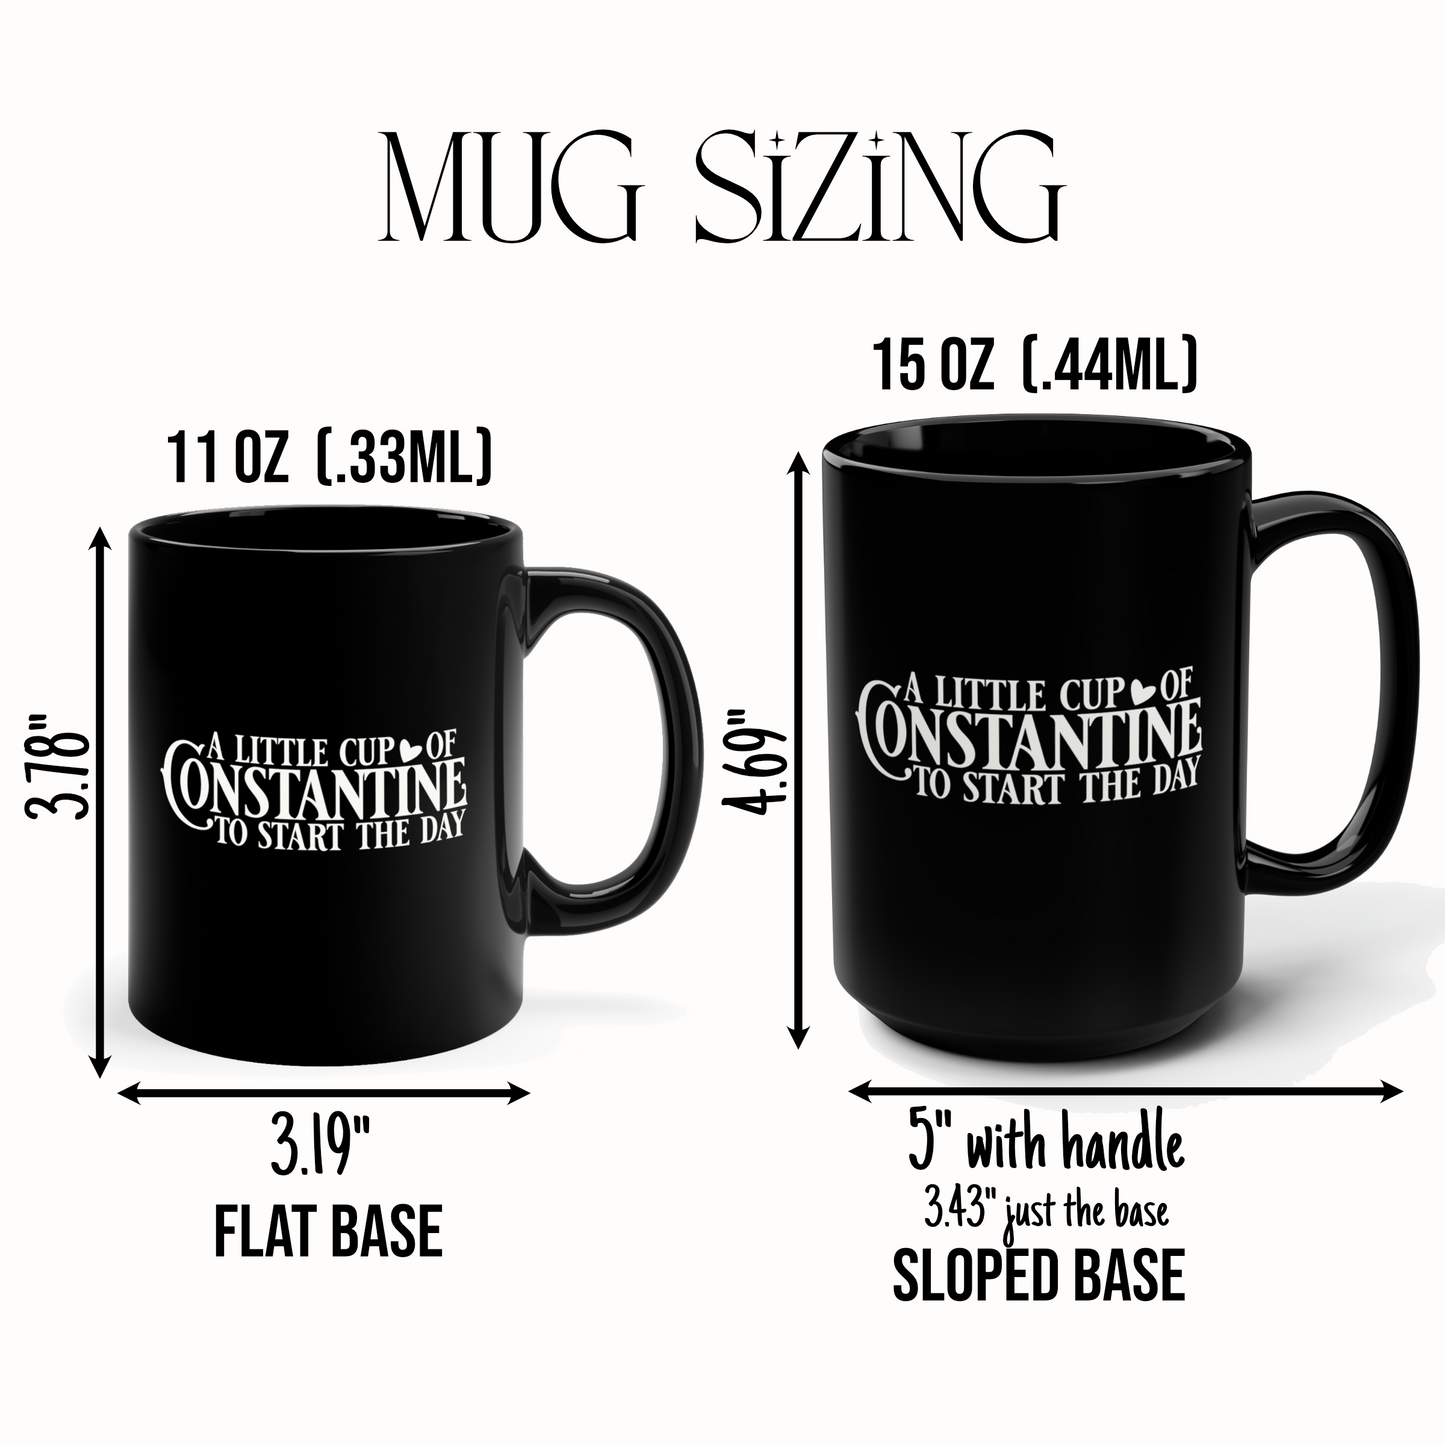 Mug sizing for 11oz and 15oz options